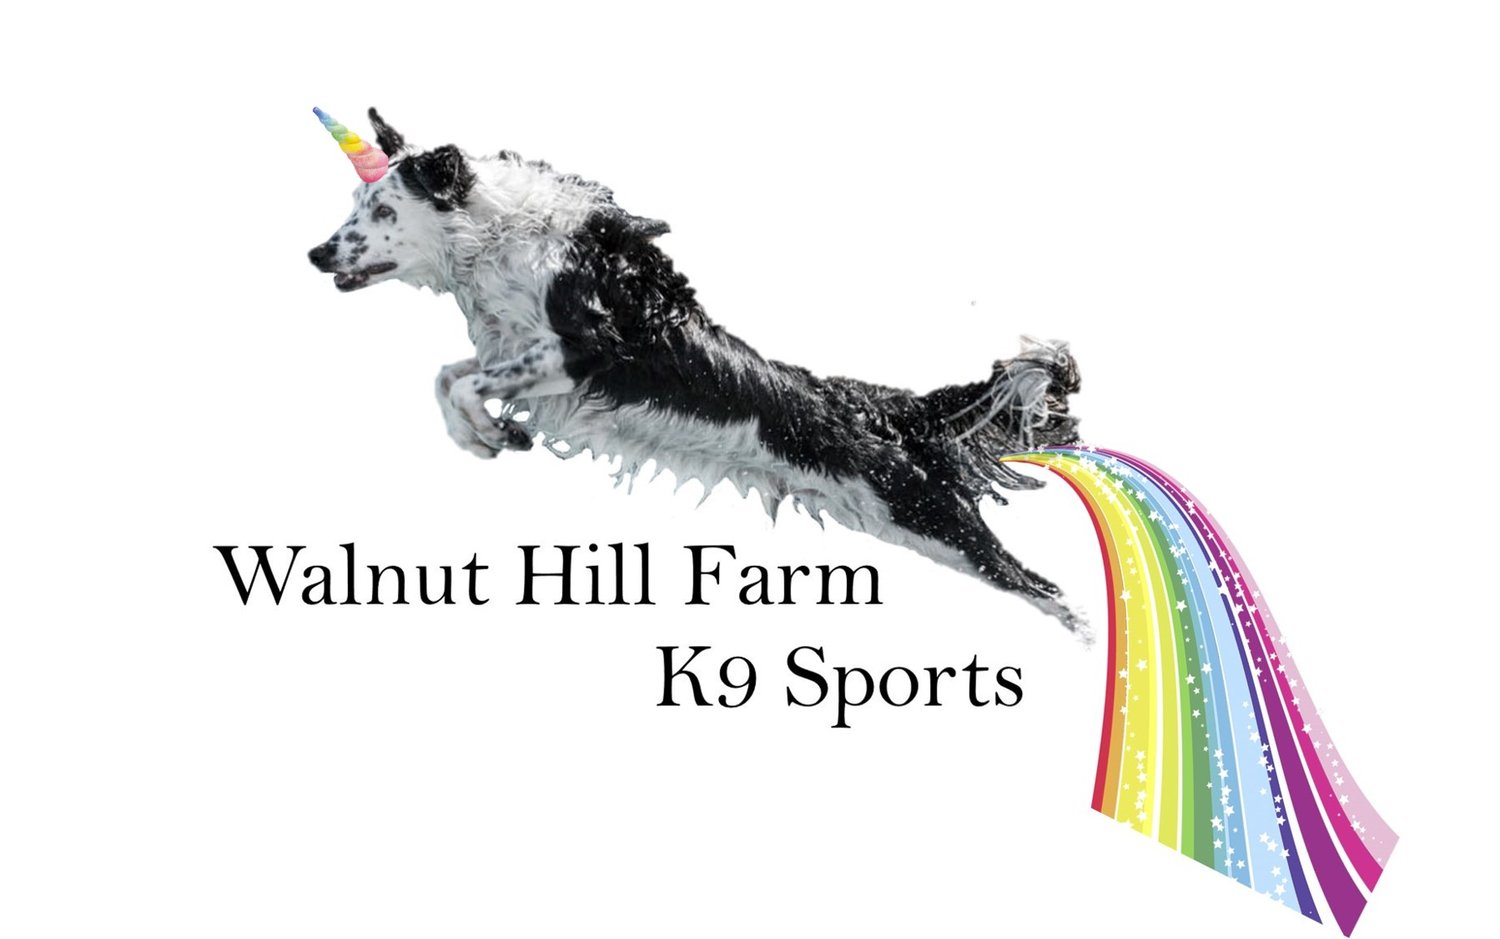 Walnut Hill Farm K9 Sports